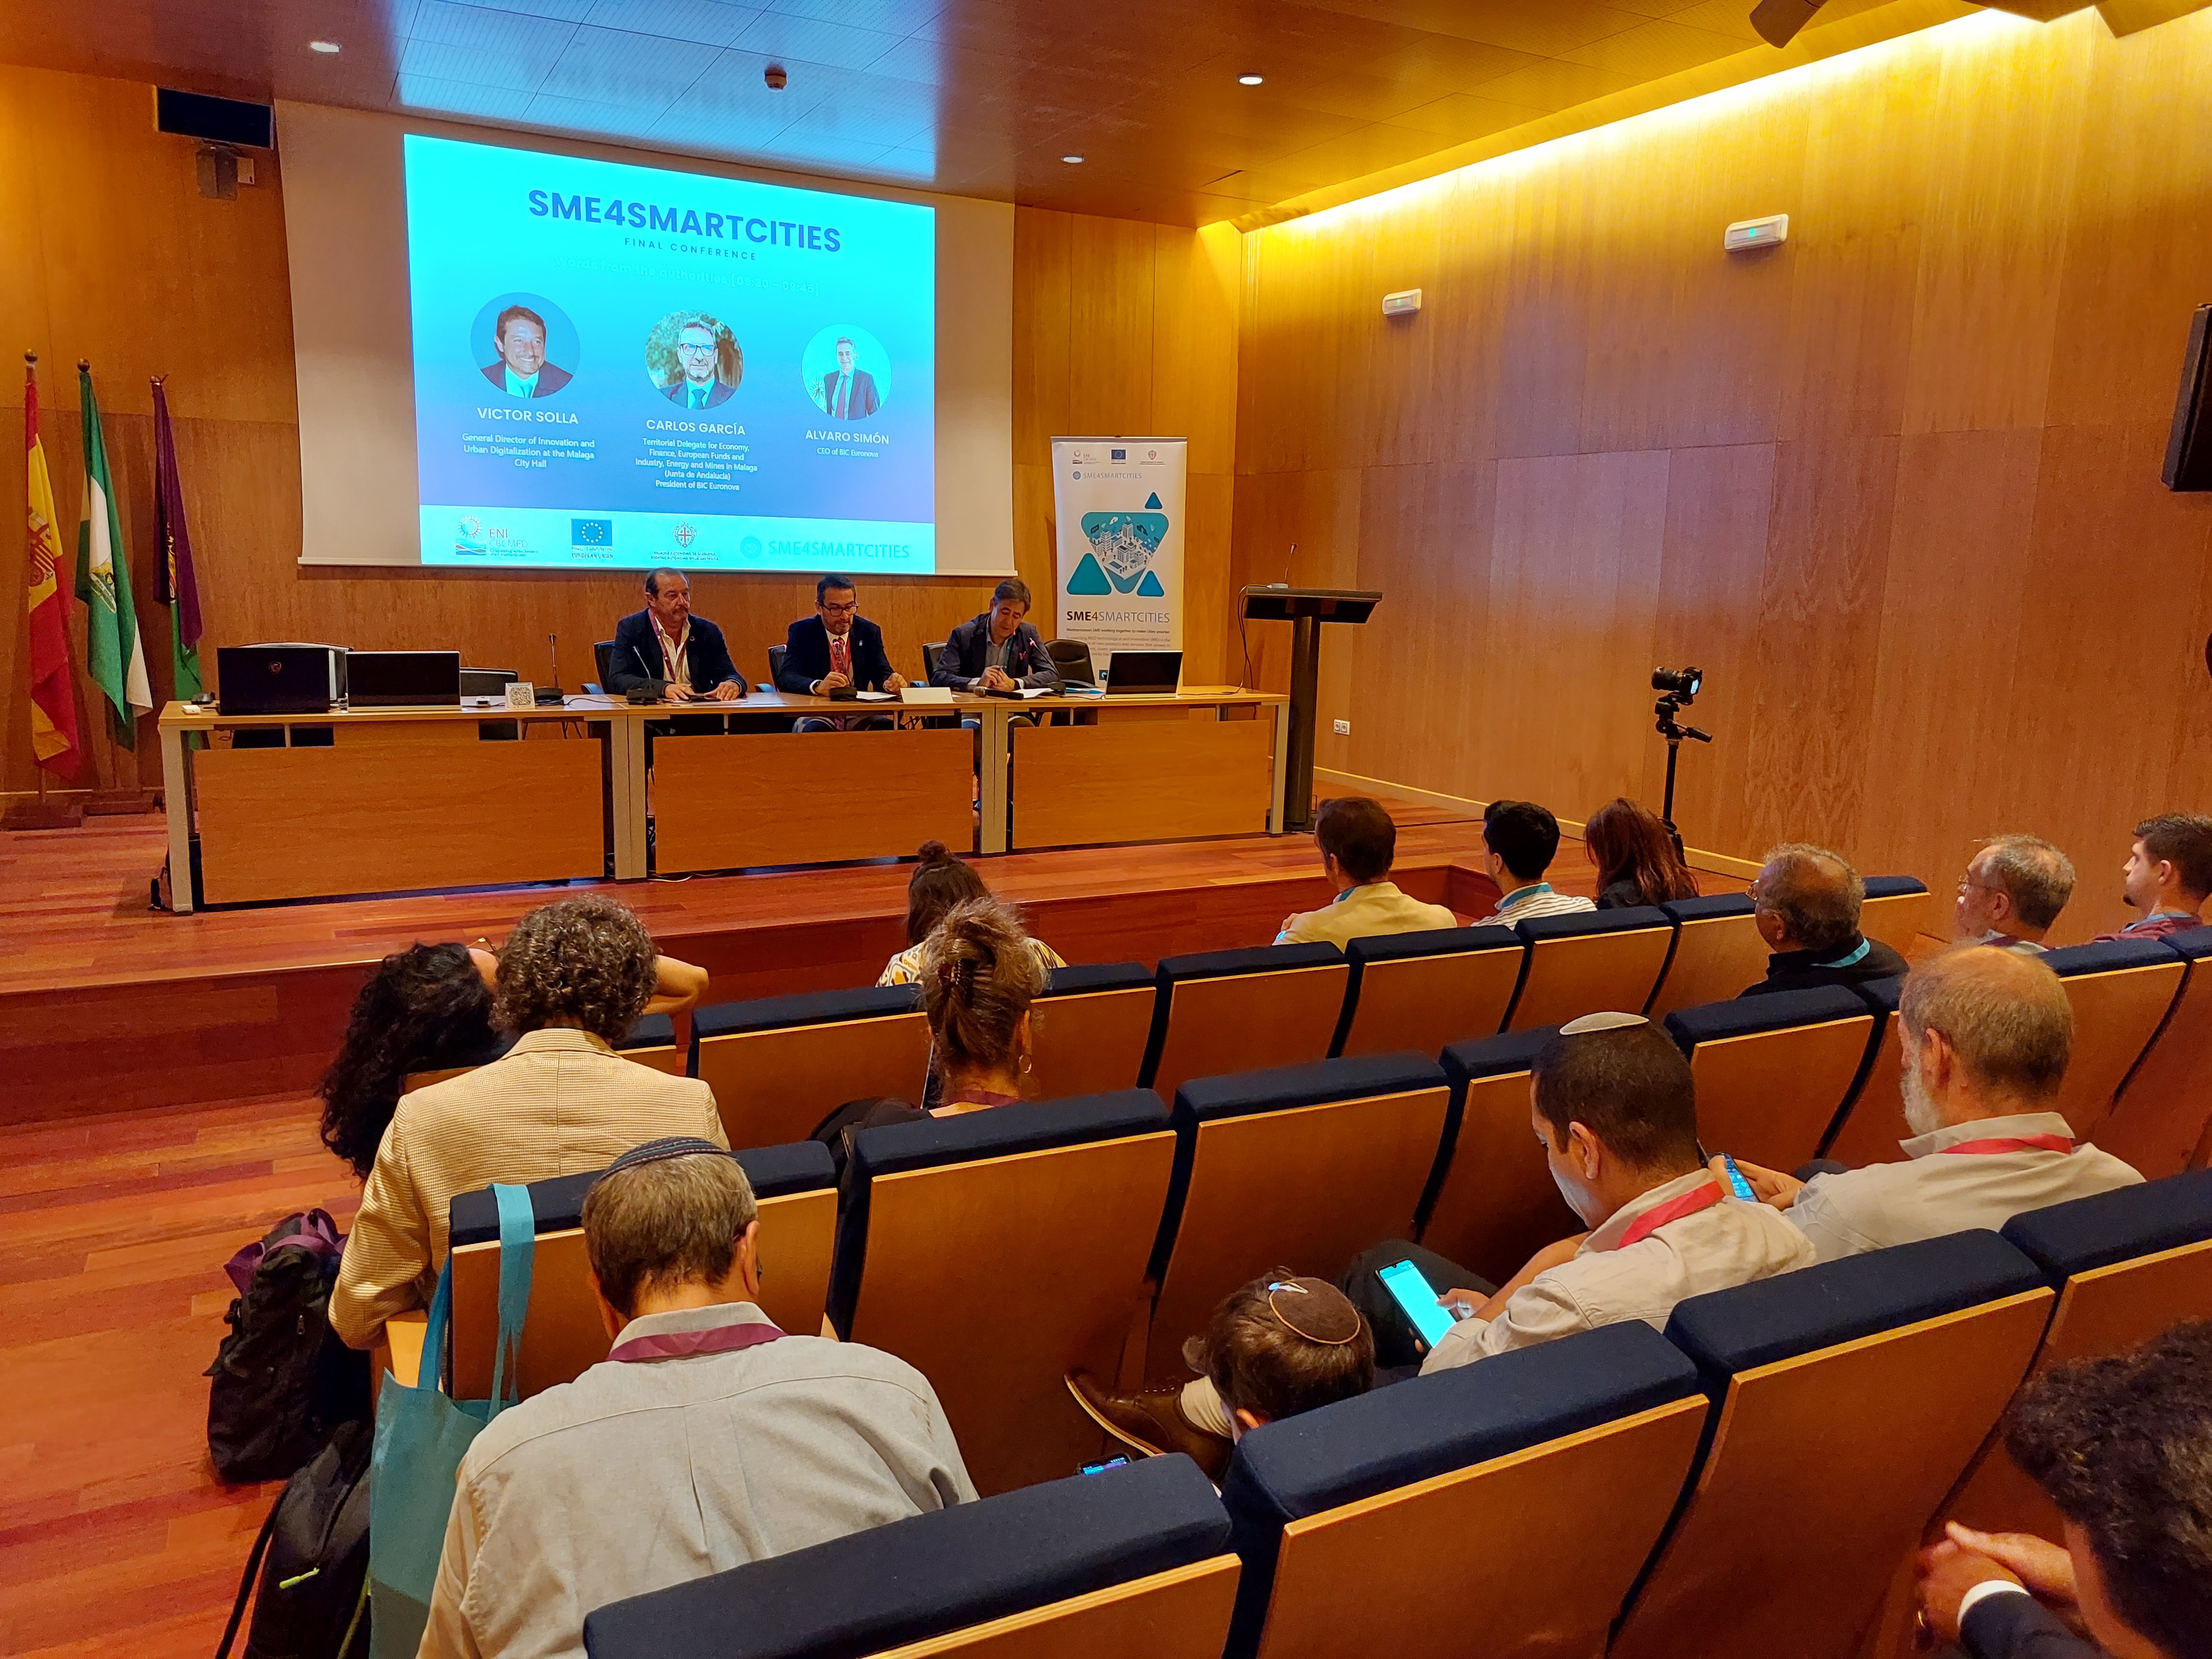 Expertos internacionales en Smart Cities abordan en Málaga soluciones tecnológicas a retos urbanos